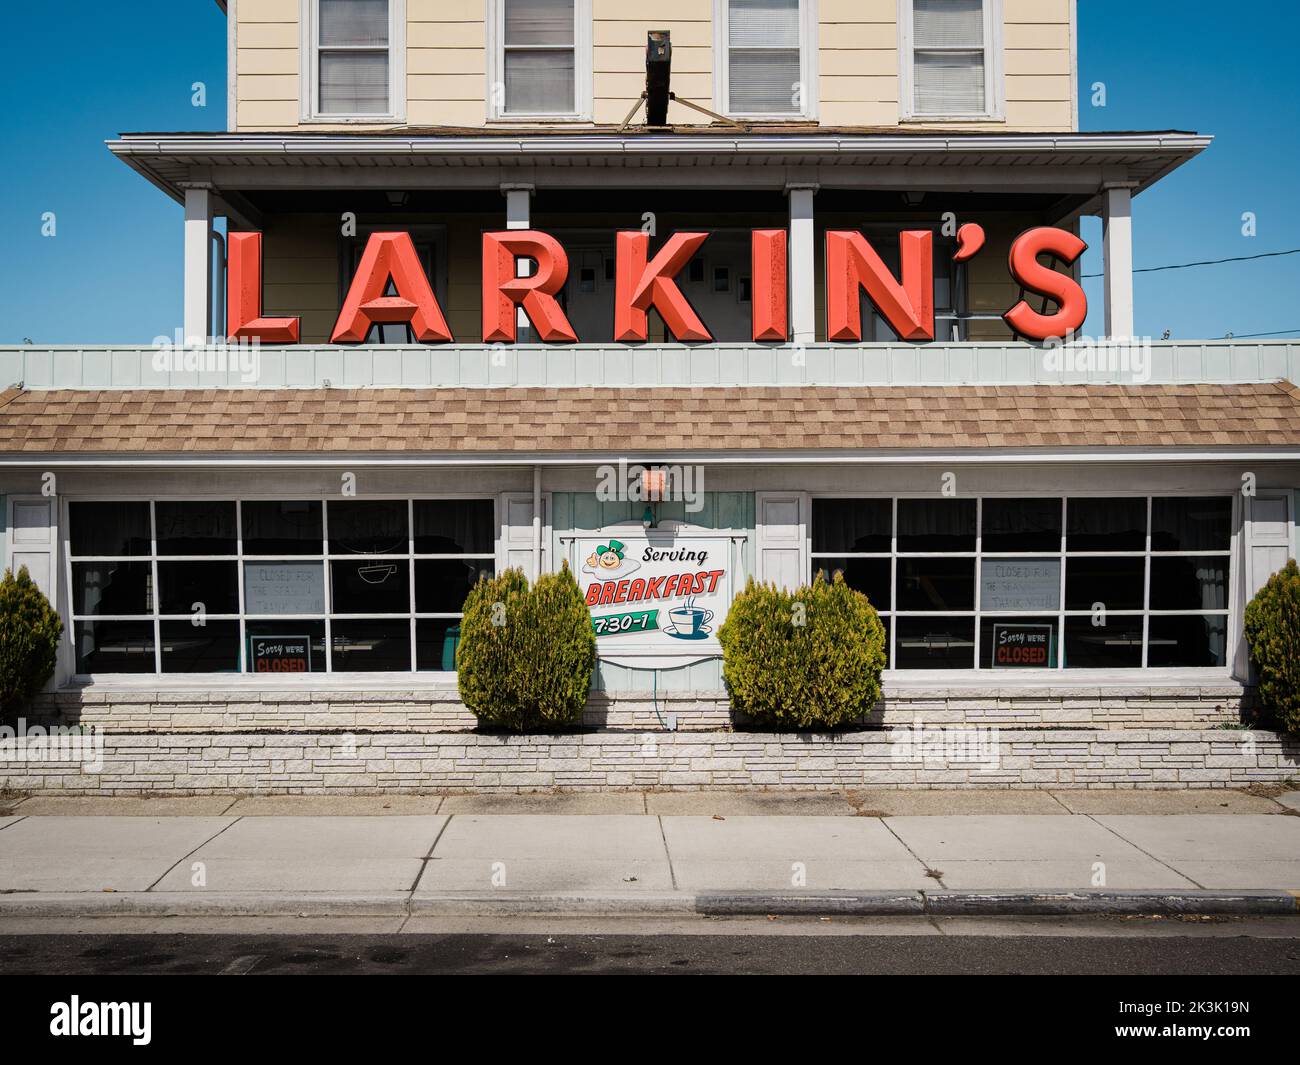 Larkins Restaurant vintage sign, Wildwood, New Jersey Stock Photo